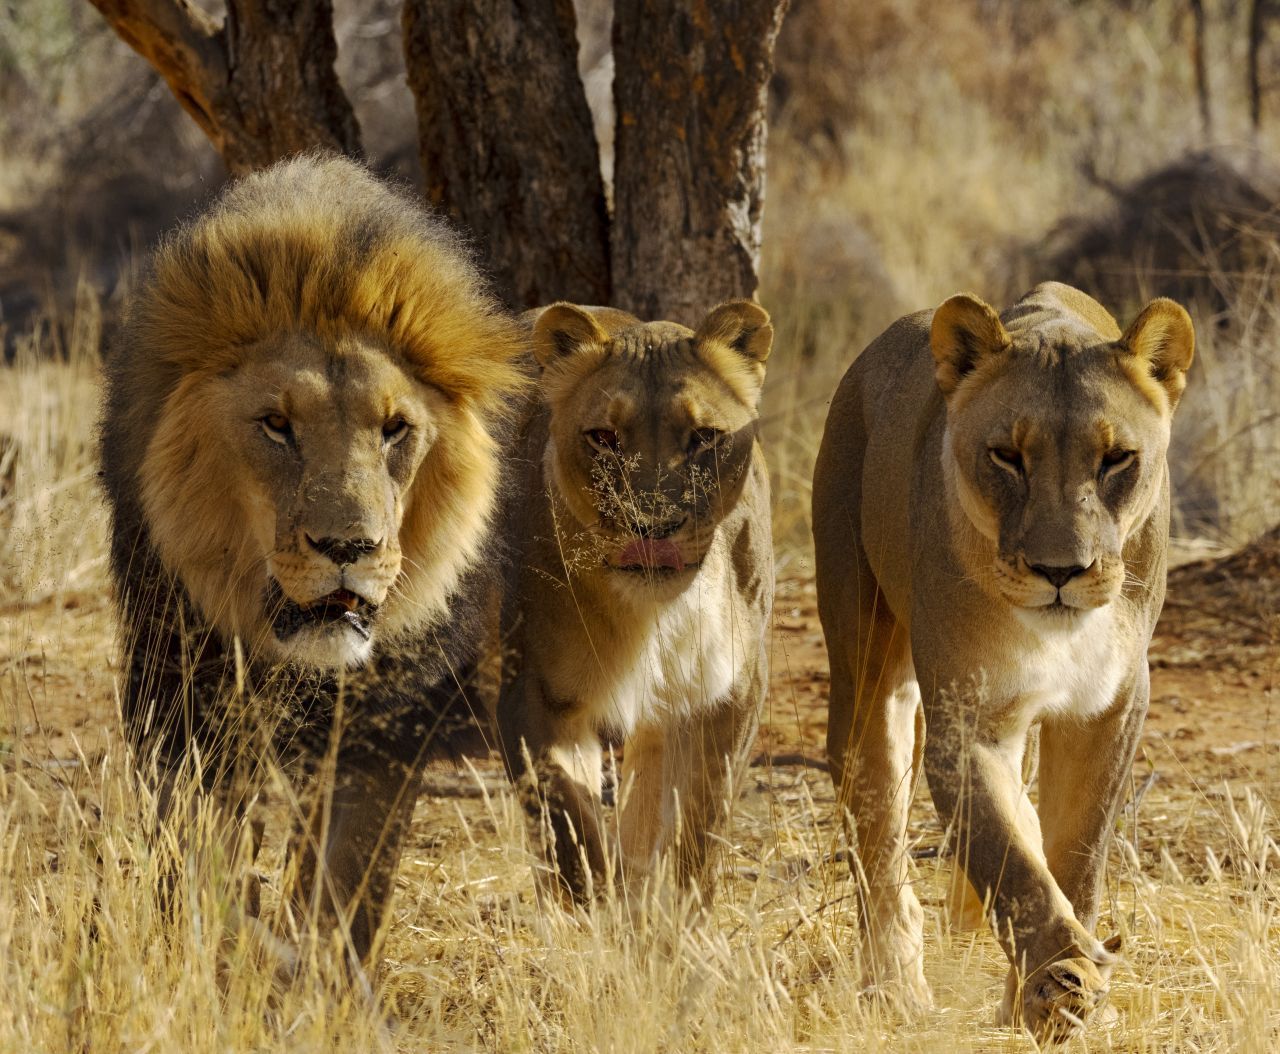 In Äthiopien befreiten 3 Löwen 2005 ein Mädchen aus seiner Gefangenschaft. Die 12-Jährige wurde von einer Männergruppe für eine Zwangsehe entführt. Angelockt von ihrem Weinen vertrieben die Löwen die Entführer und warteten ruhig neben dem Mädchen, bis die Polizei eintraf. Vermutlich erinnerte ihr Wimmern die Löwen an die Laute ihrer Jungen. 